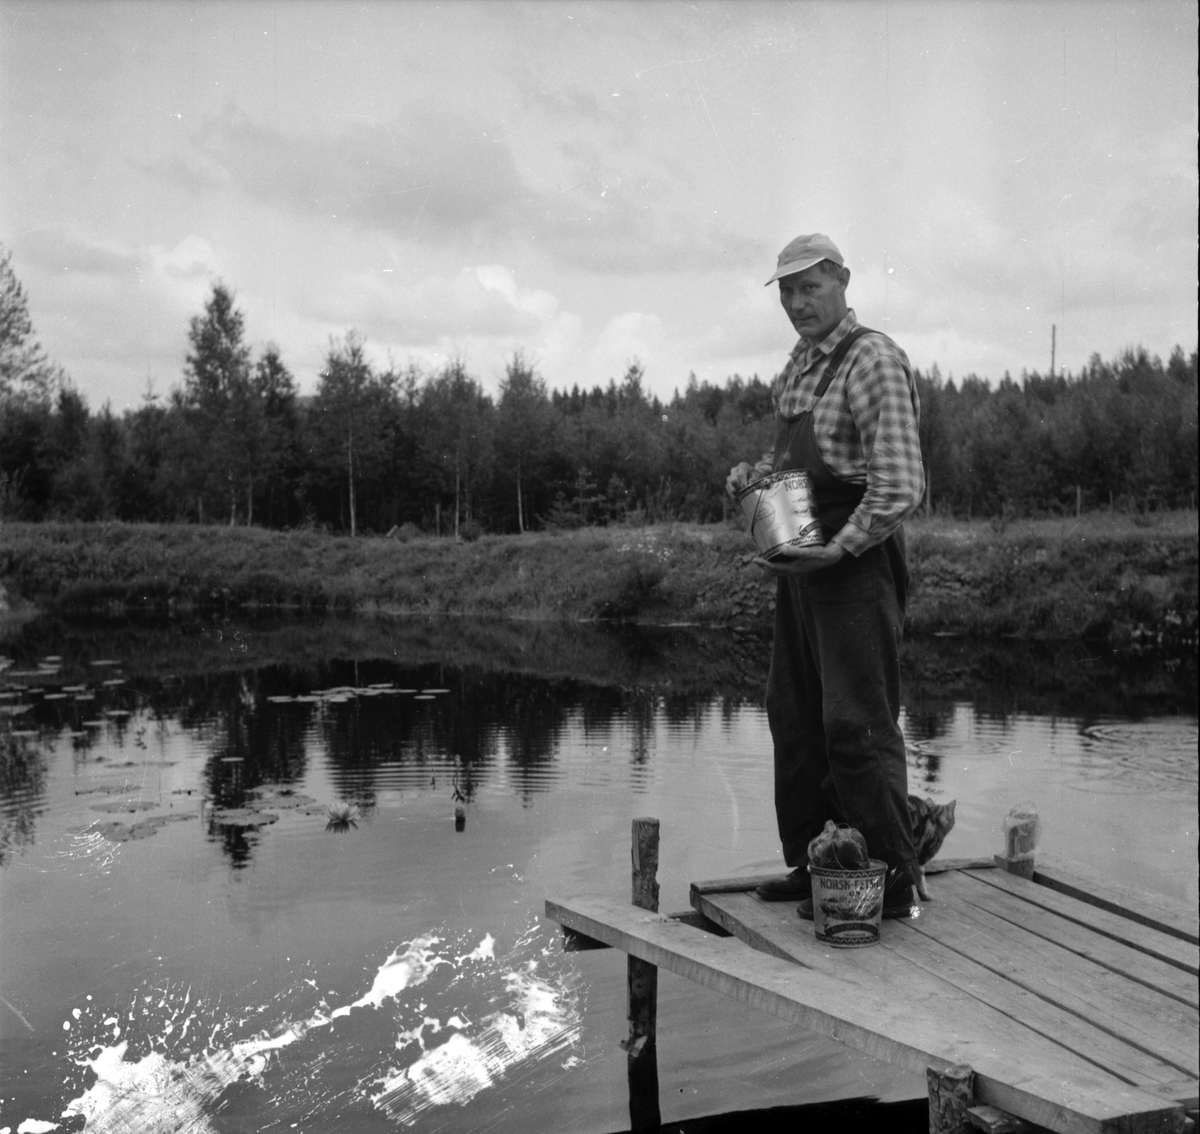 Järvsö-Nor. Öringsodling i Nor
Olof Olsson. 8/8-1960